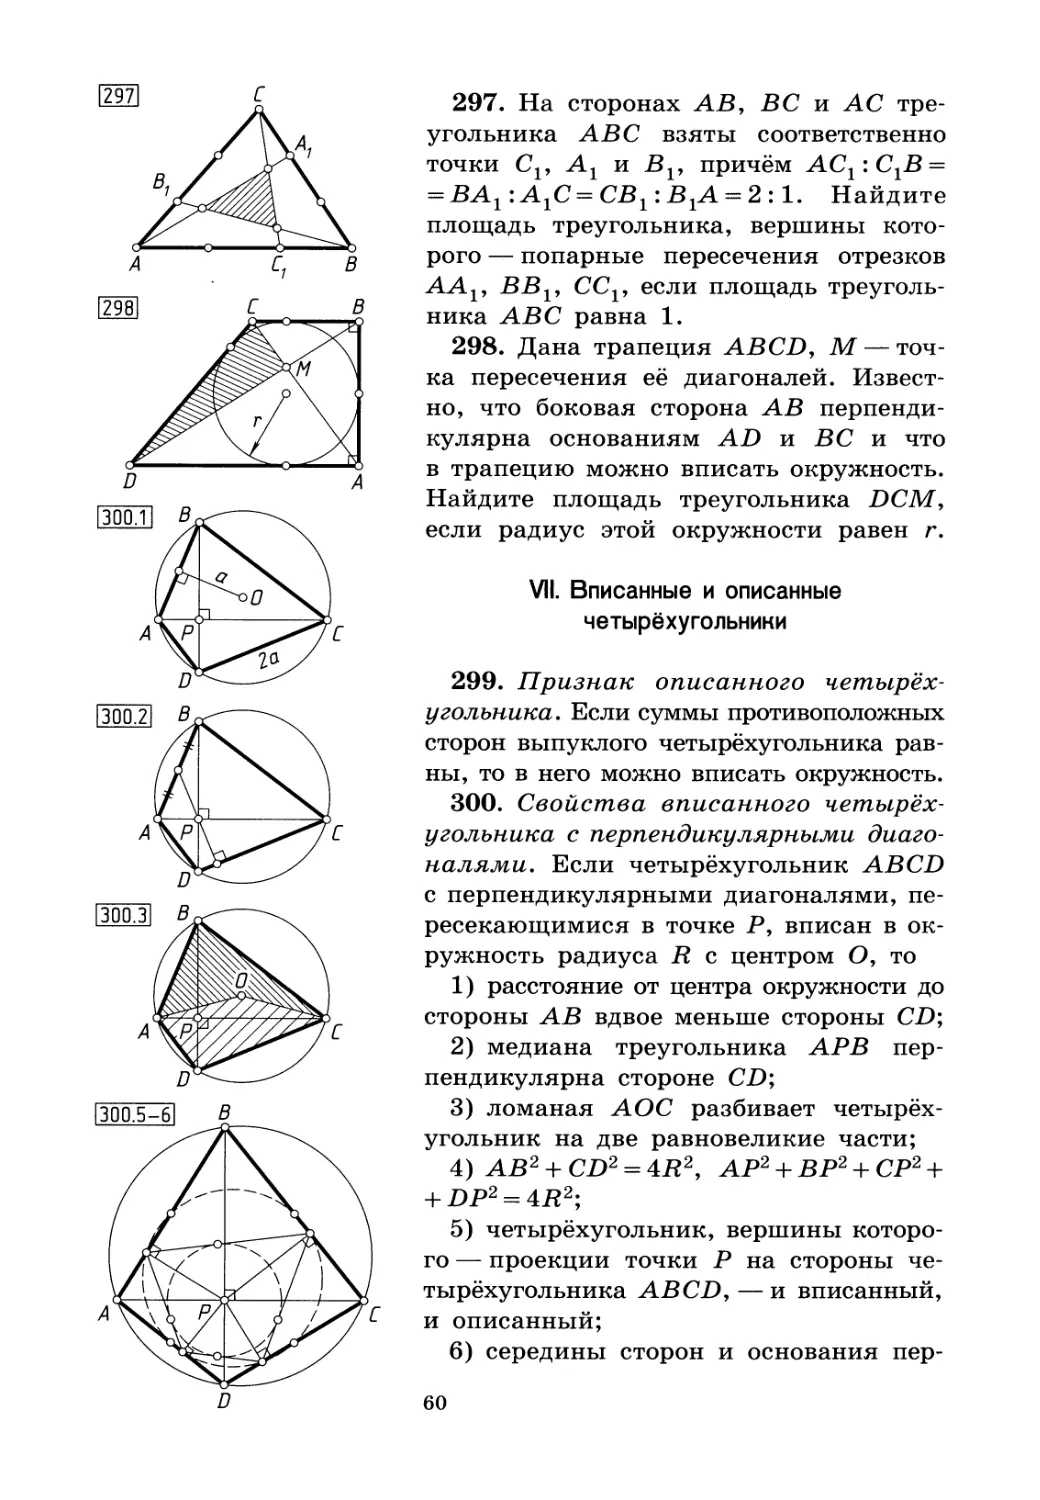 VII. Вписанные и описанные четырёхугольники